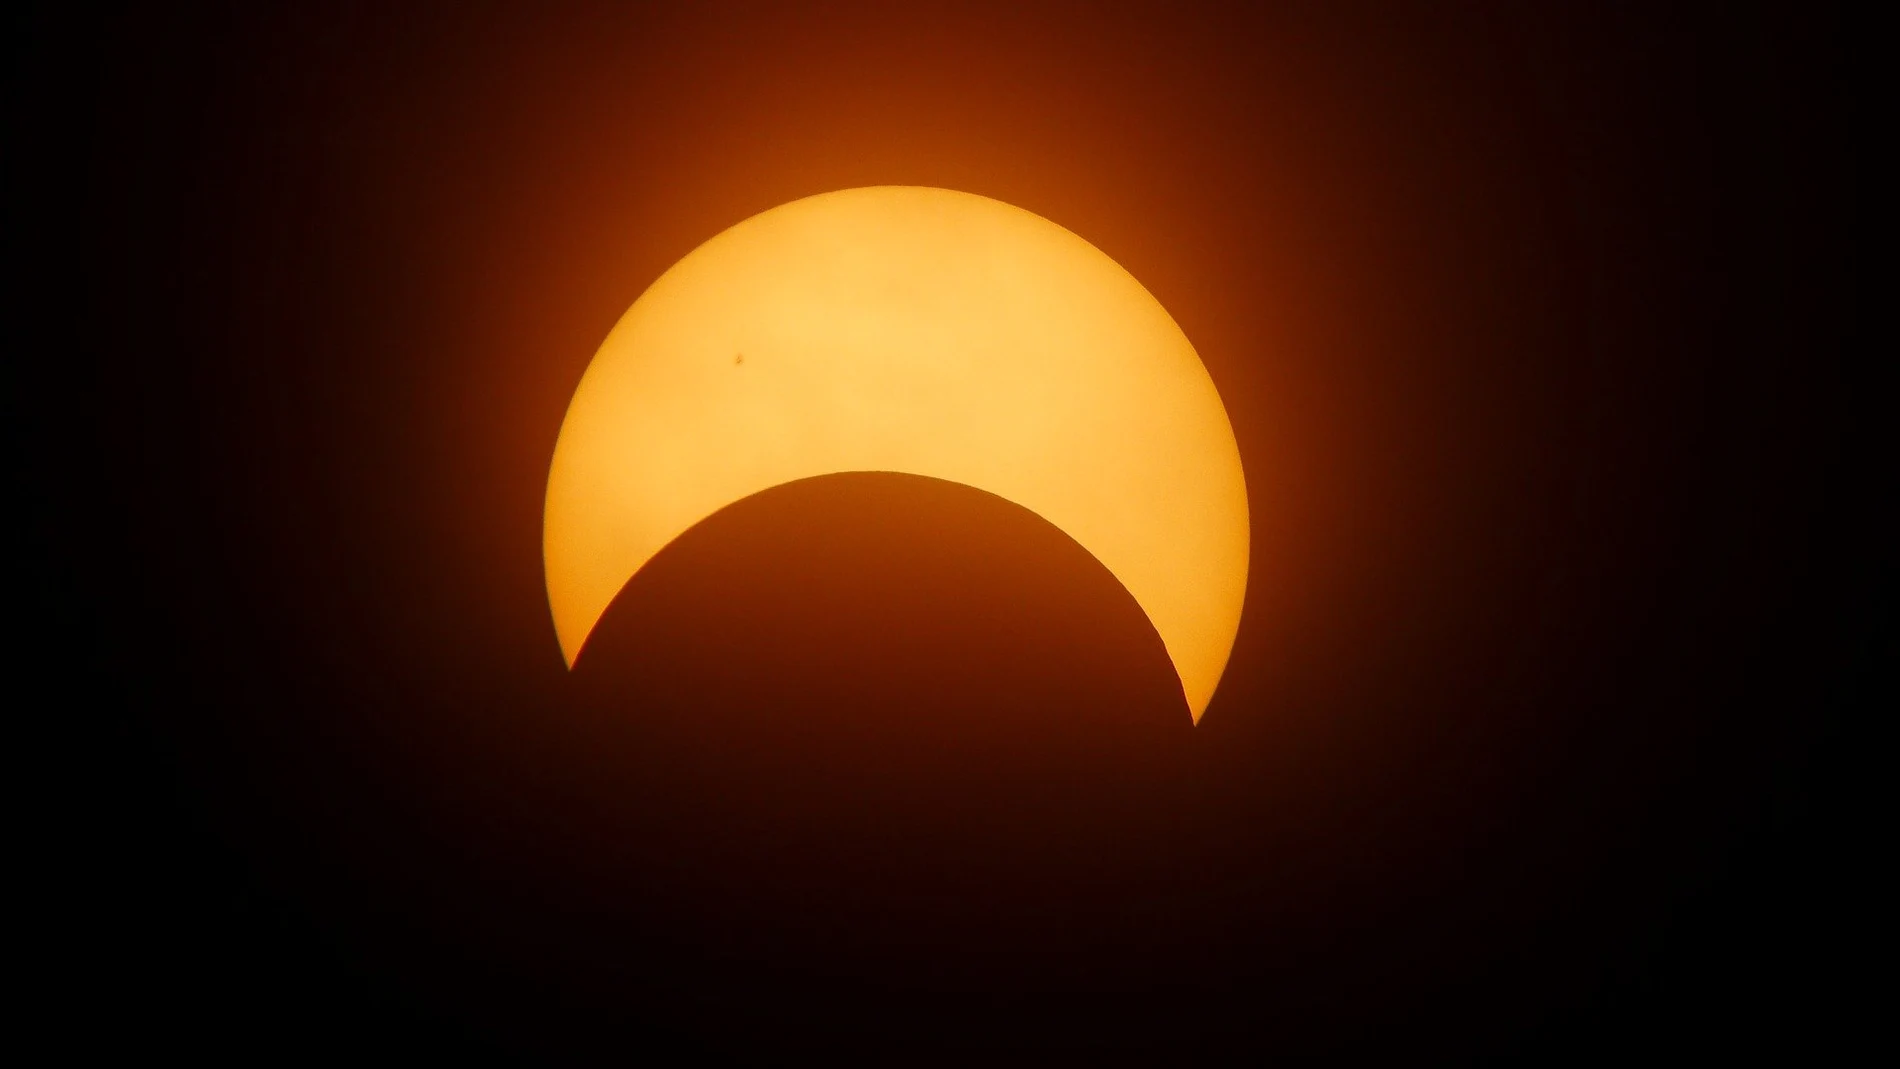  Eclipse solar del 10 de junio de 2021: ¿Cuándo y cómo verlo desde España?